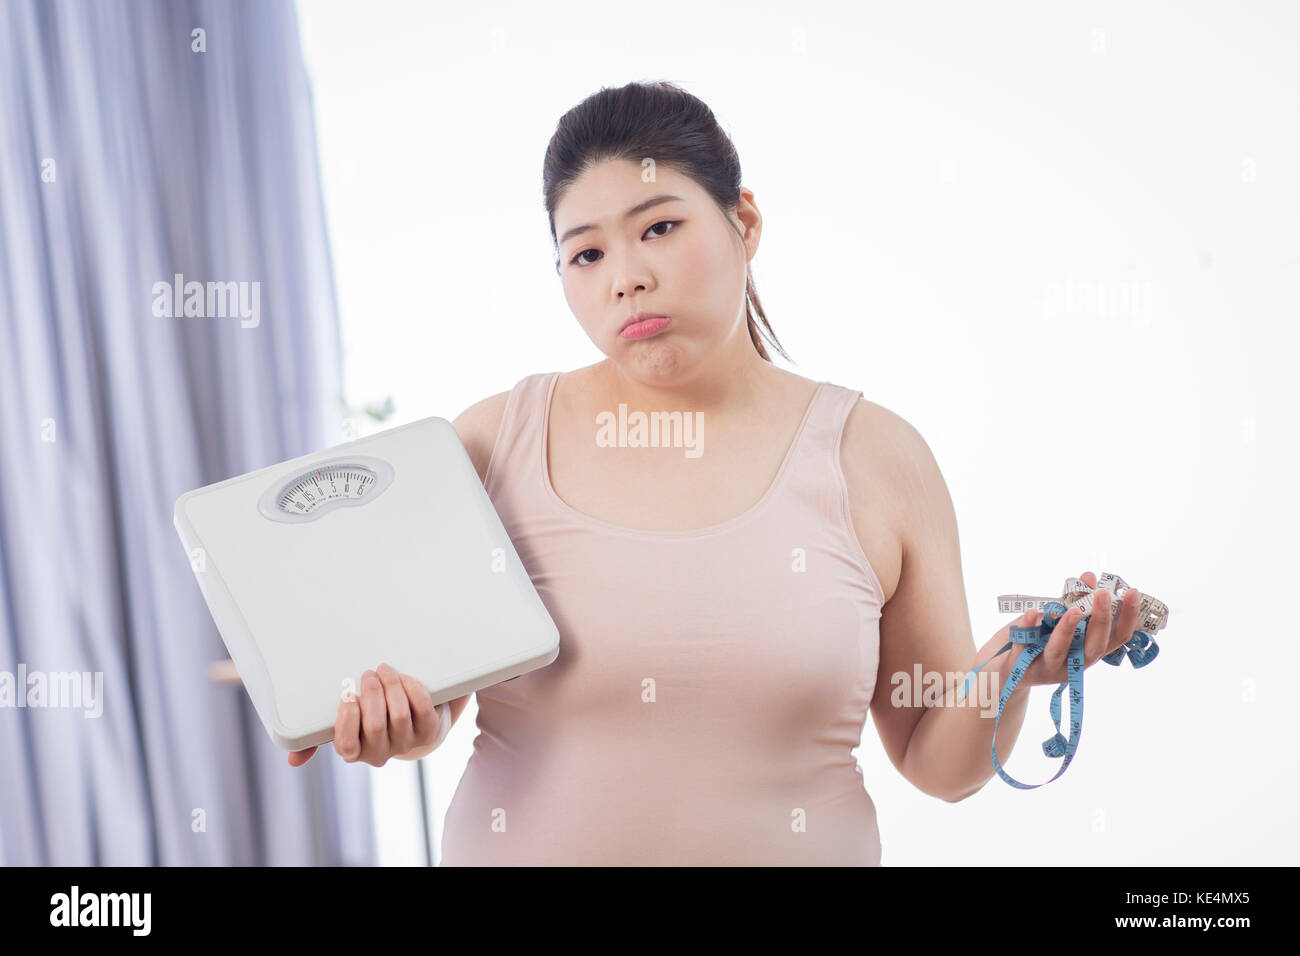 Portrait de jeune femme obèse avec une échelle et ruban à mesurer Banque D'Images